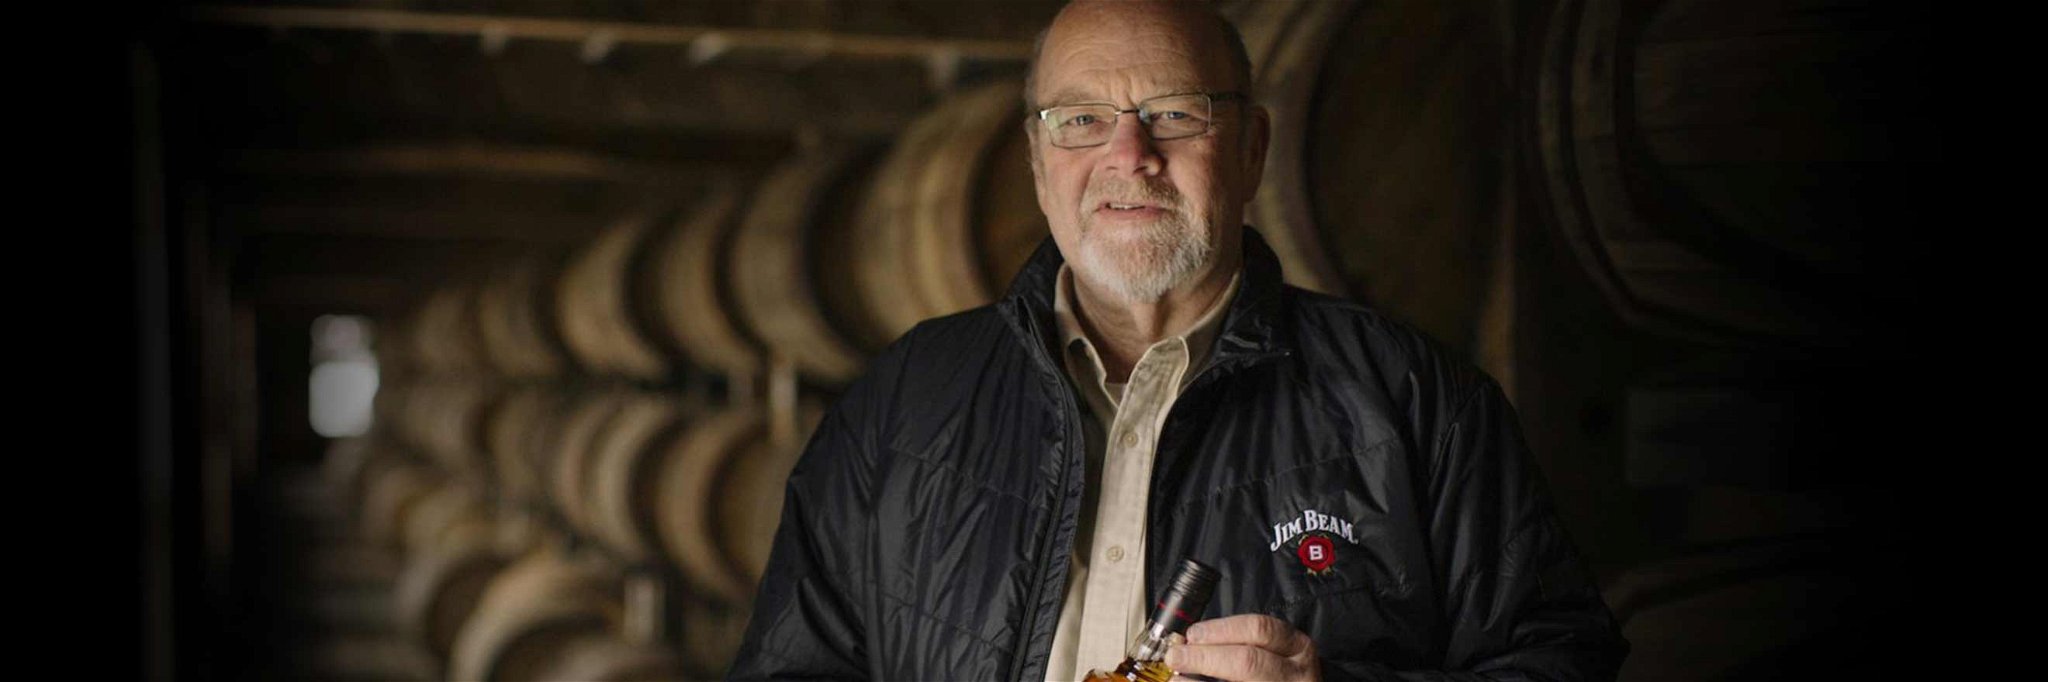 Fred Noe Master Distiller von James B. Beam, der größten Burbonmarke der Welt.